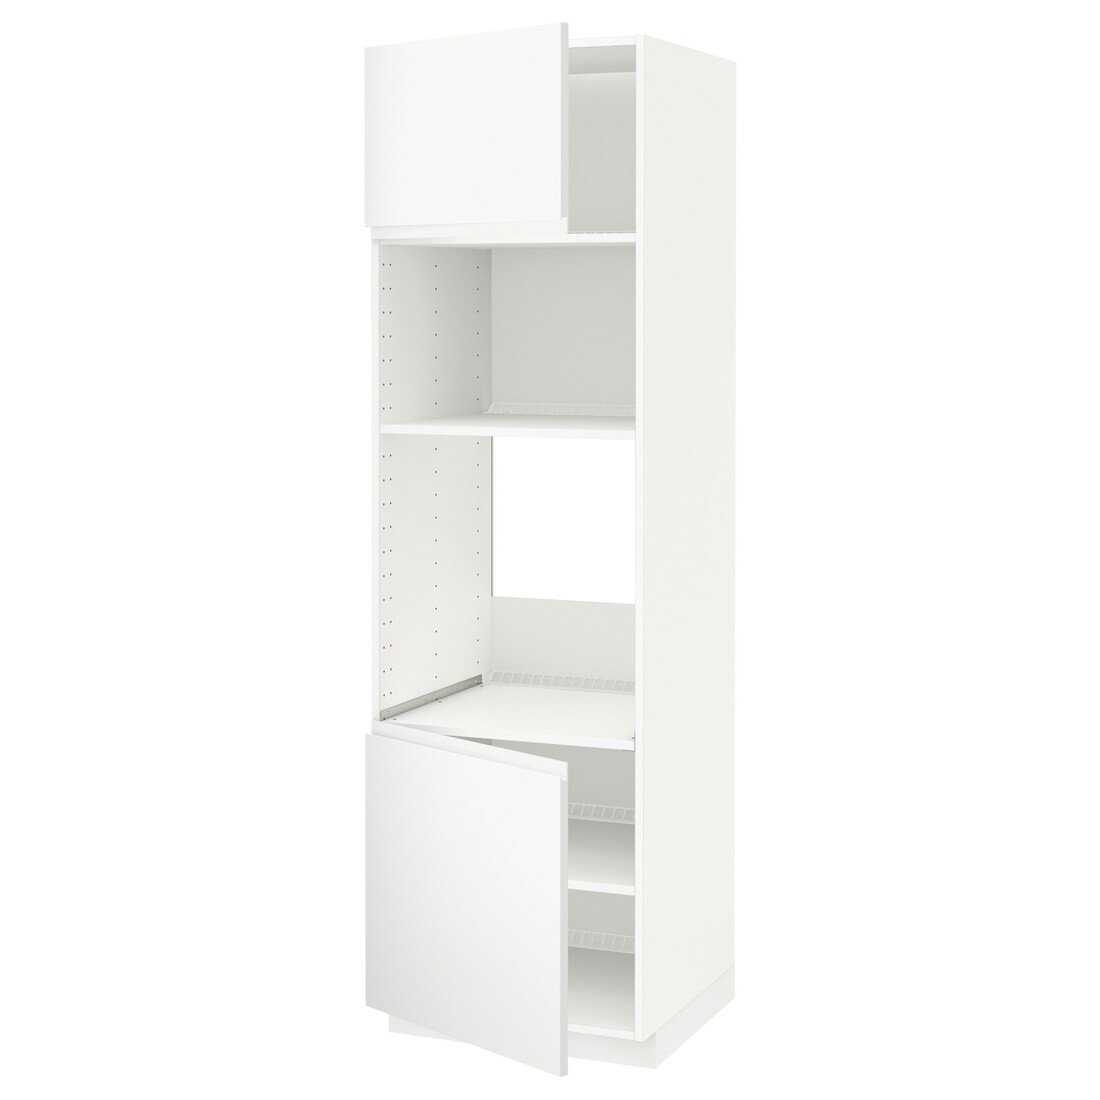 METOD МЕТОД Высокий шкаф для духовки / СВЧ, белый / Voxtorp матовый белый, 60x60x200 см